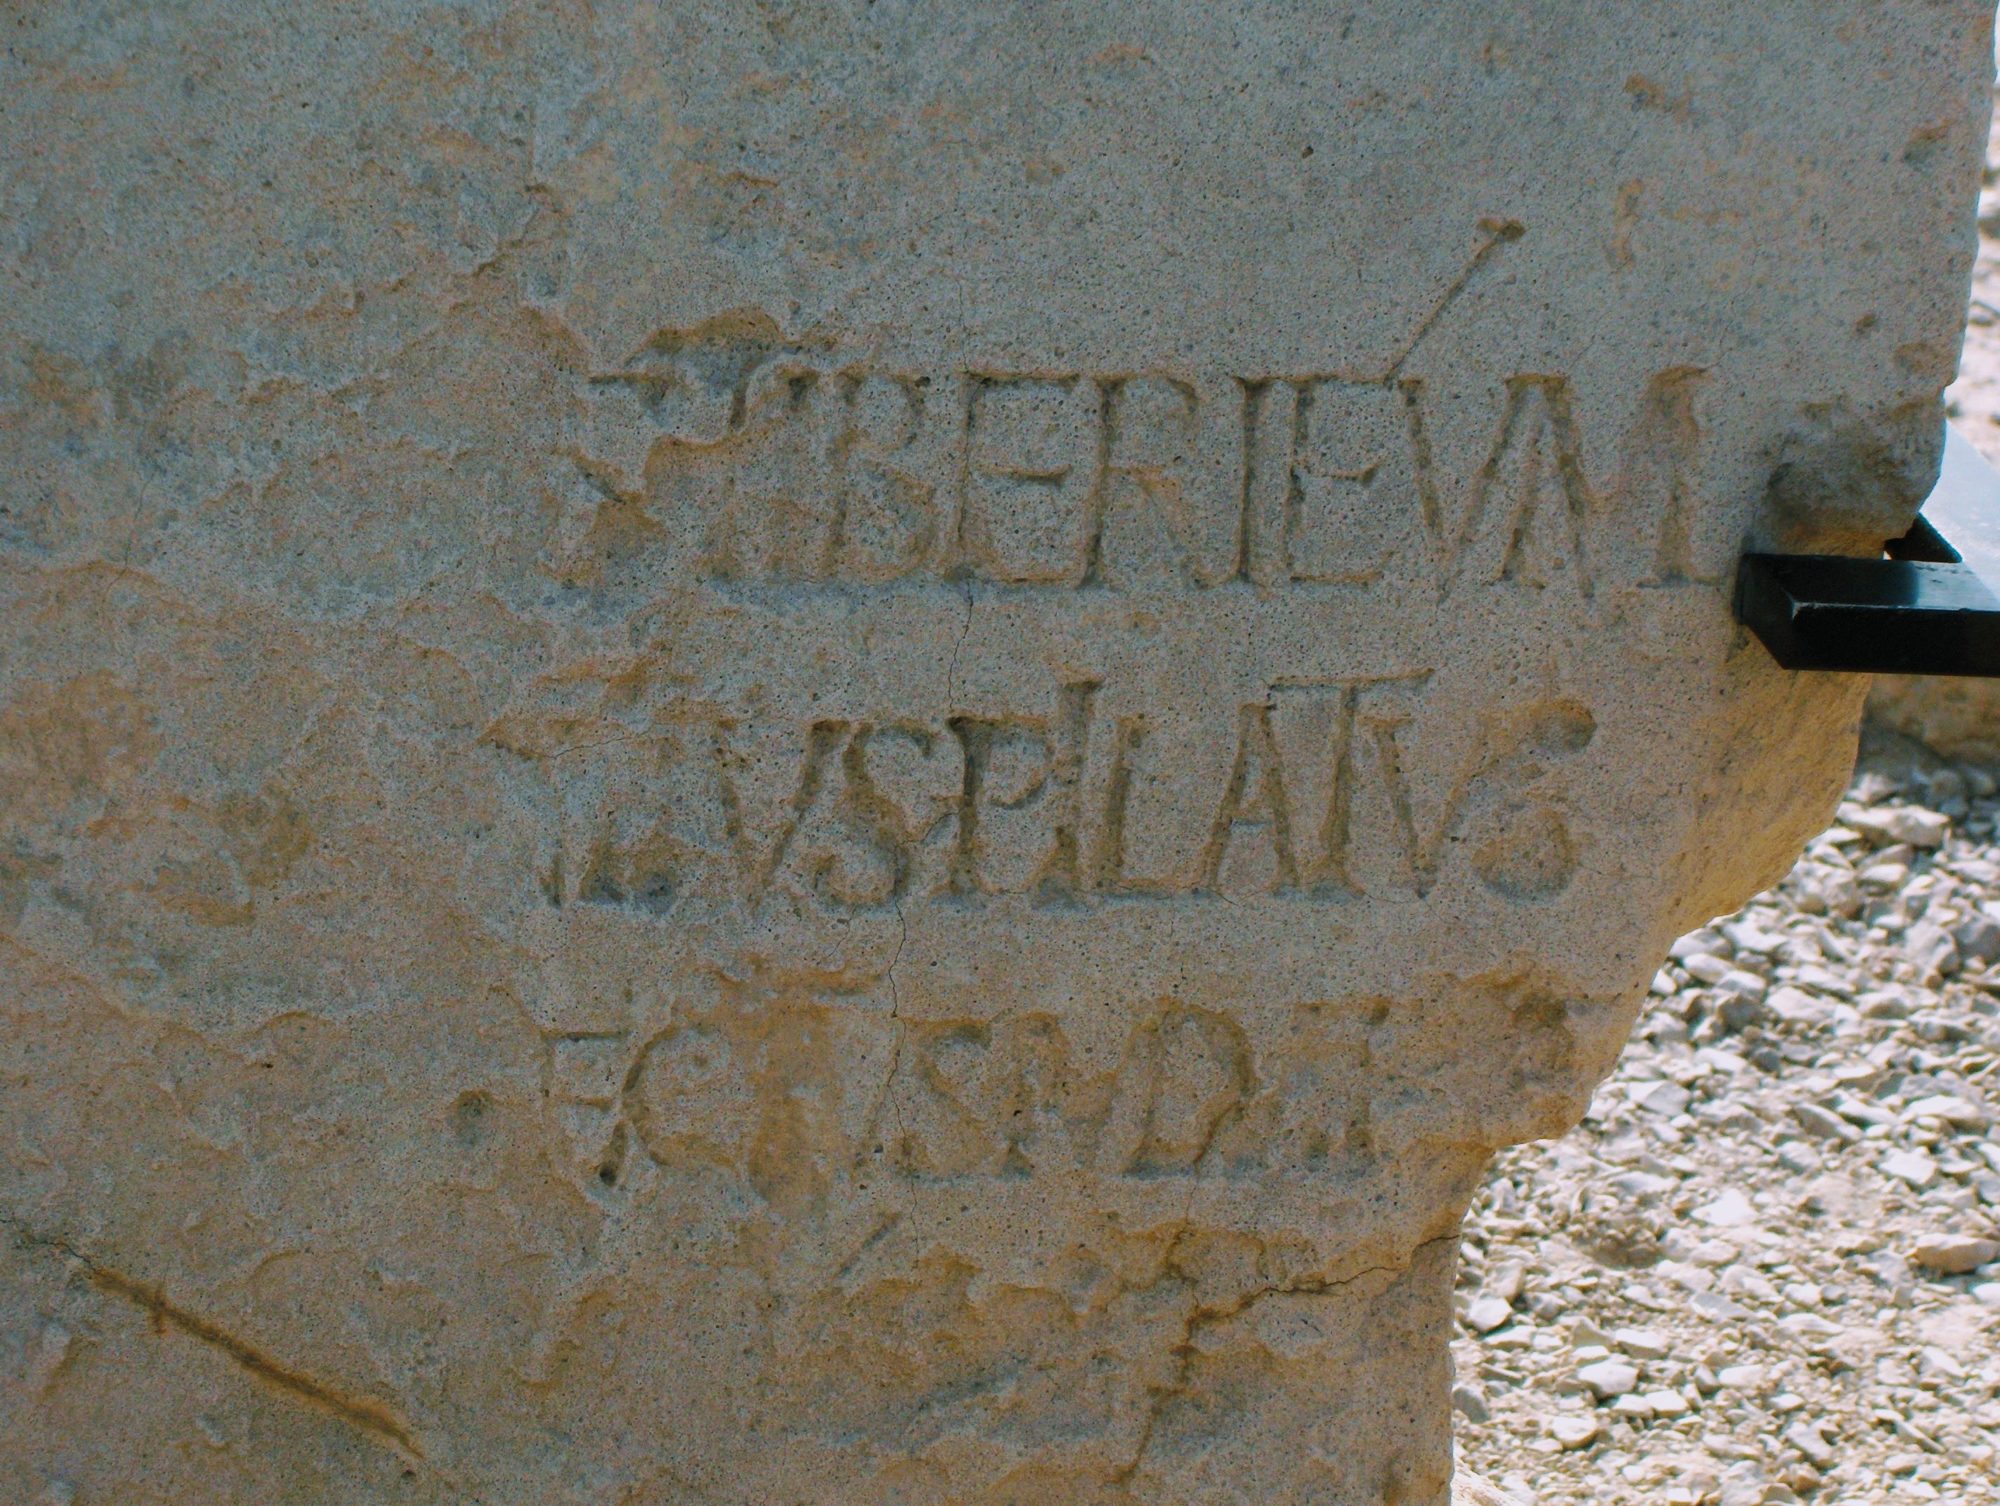 A stone bearing an inscription naming “[Ti]berium [Ponti]us Pilatus” was unearthed in Casarea Maritima